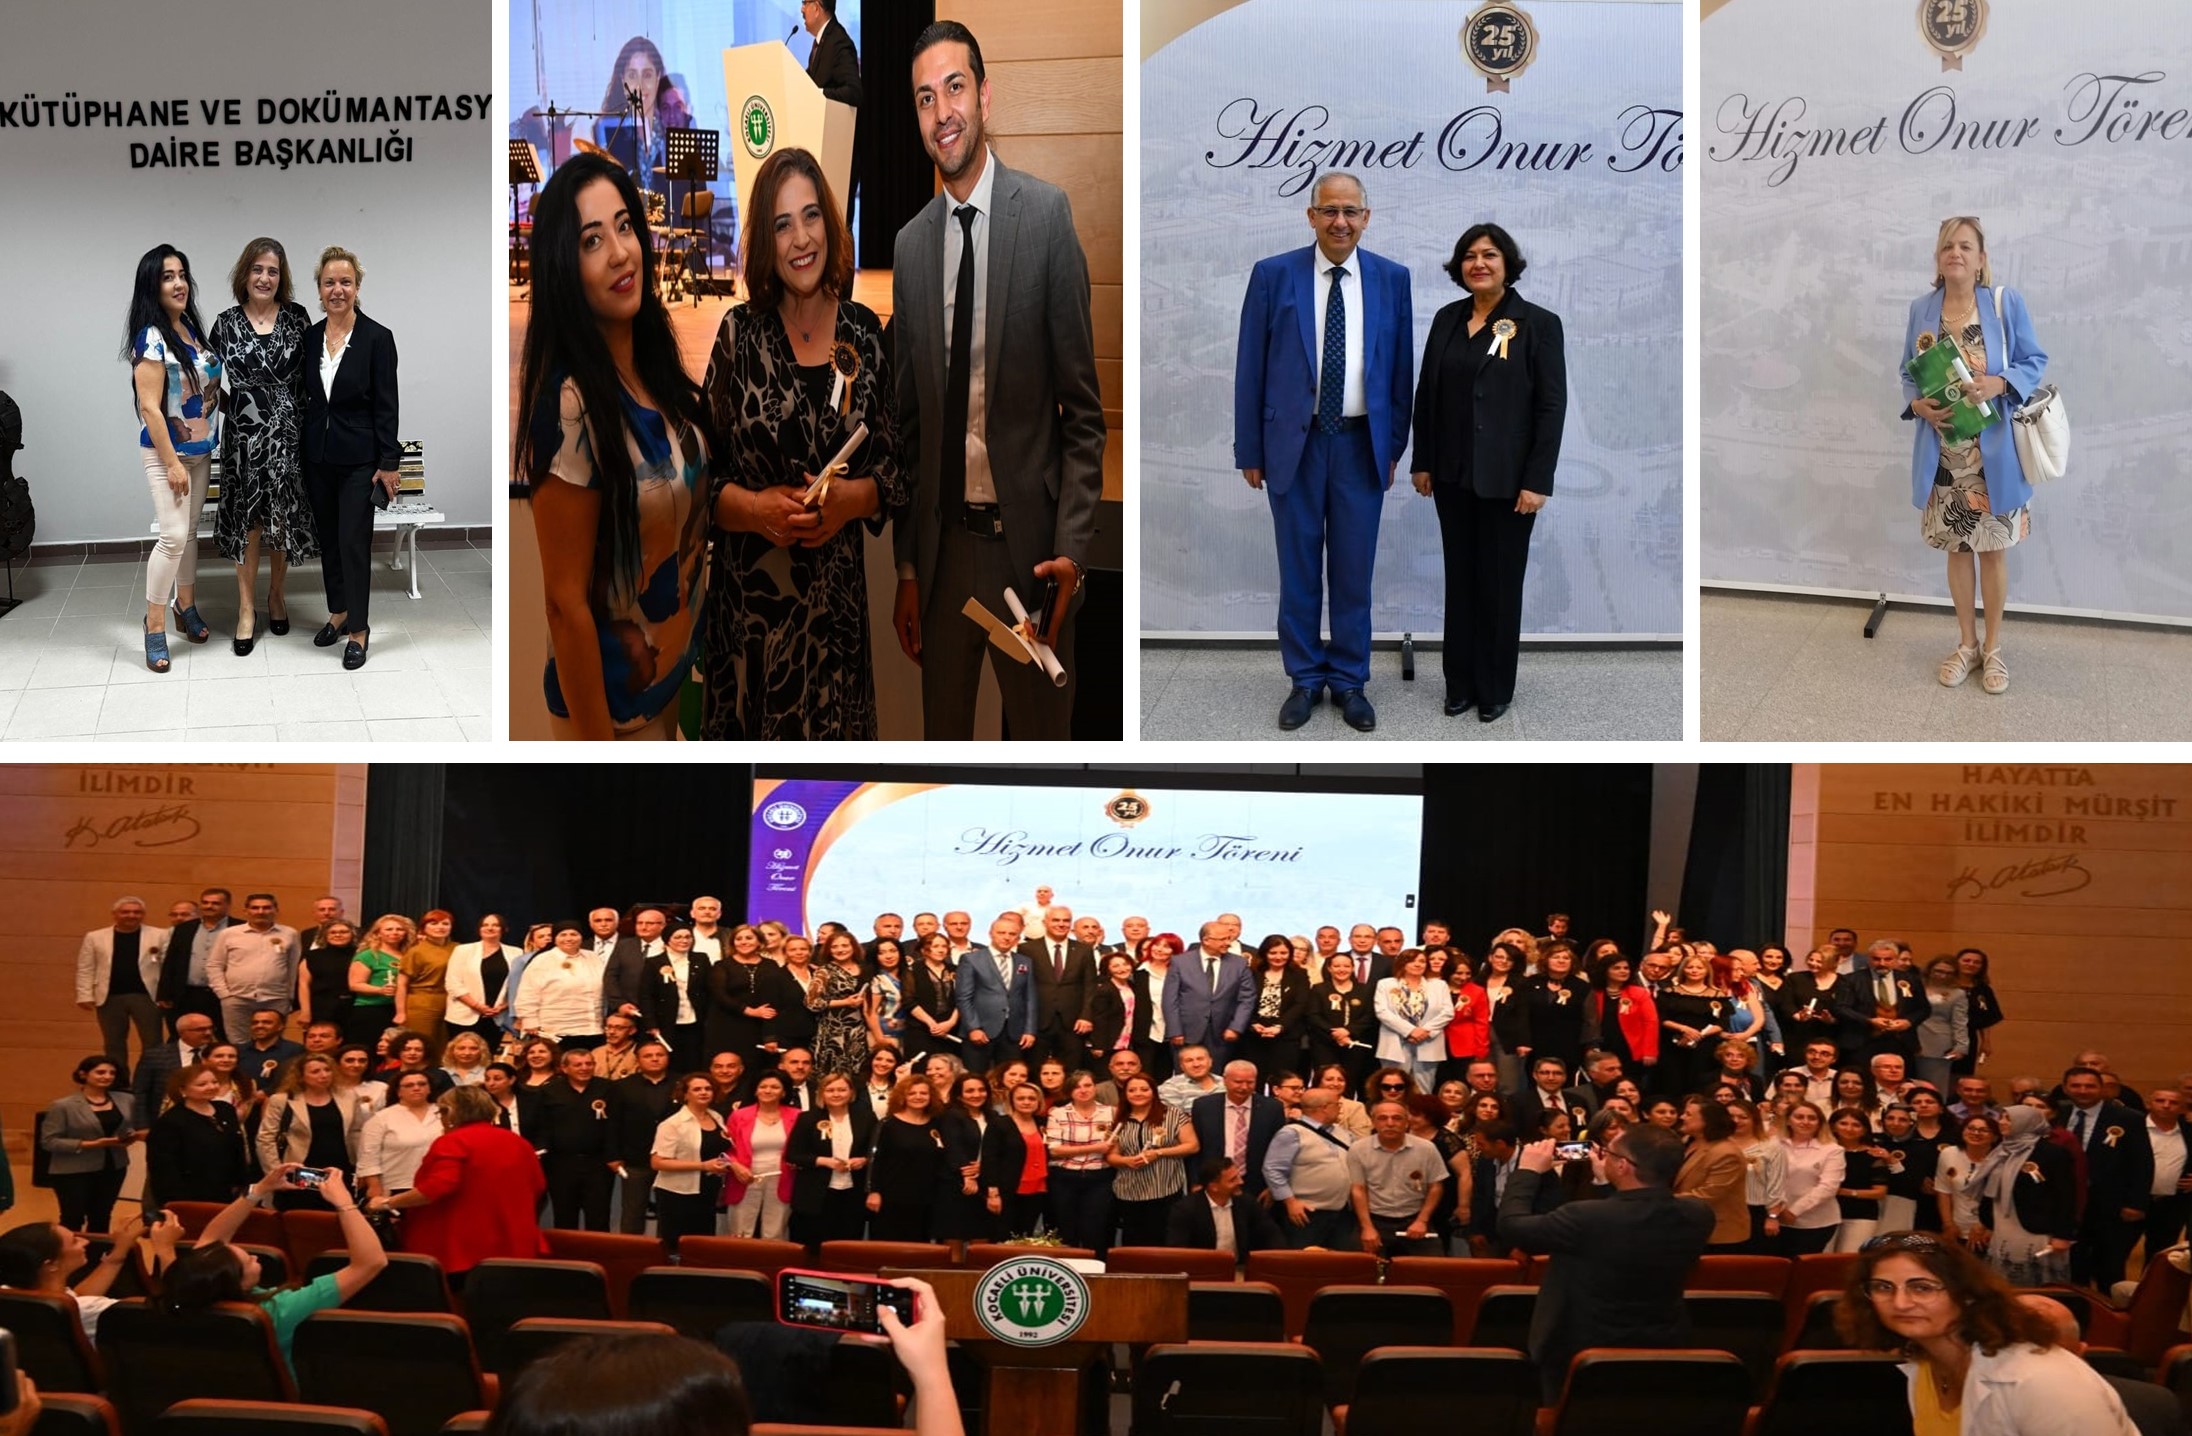 Kocaeli Üniversitesi 25. Yıl Hizmet Onur Töreni düzenlendi